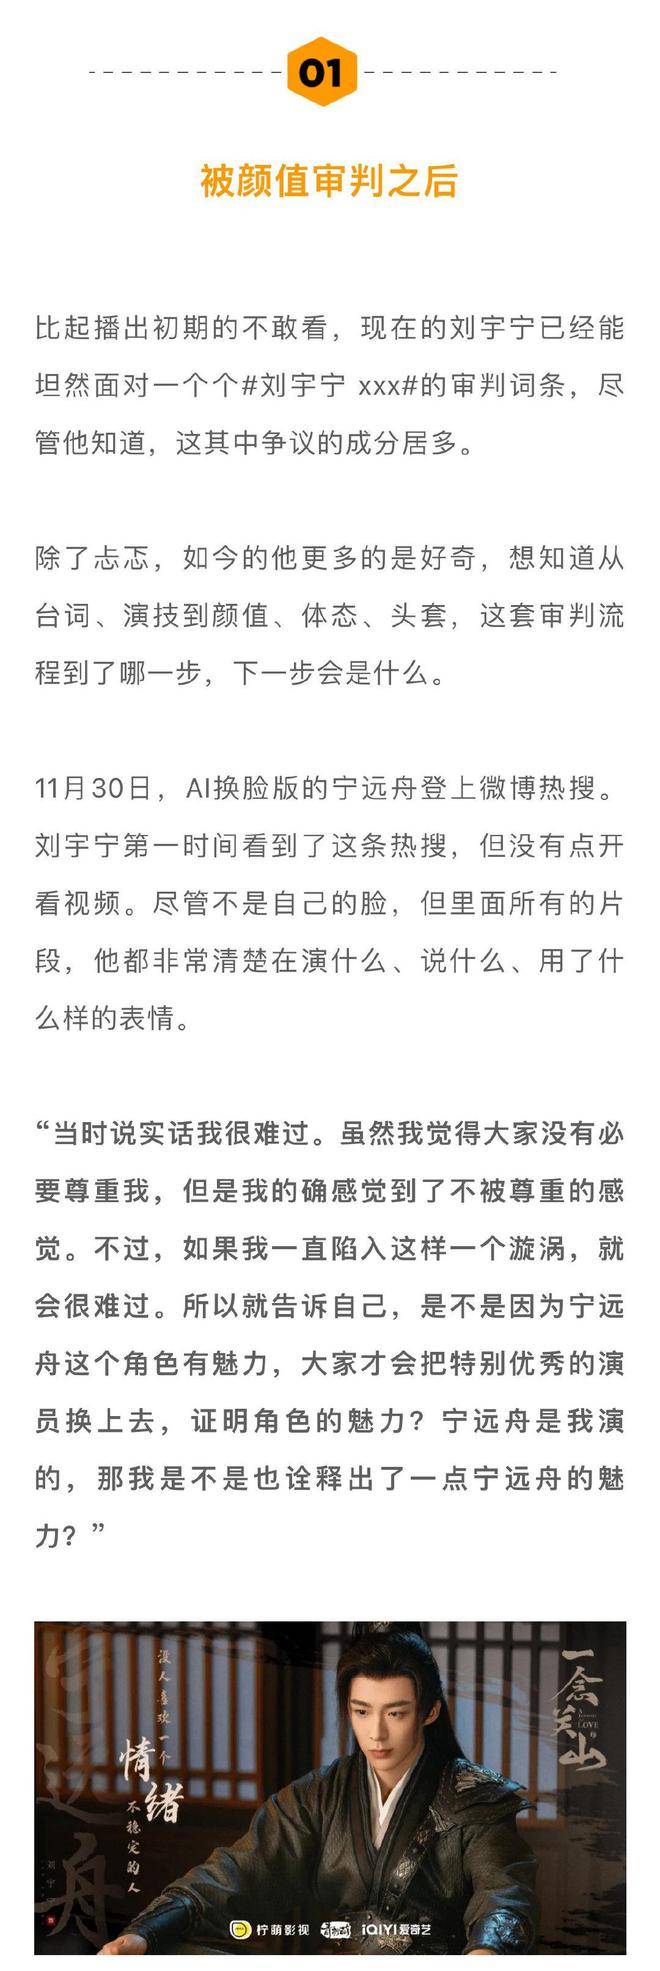 《一念关山》热播，刘宇宁回应AI换脸版宁远舟，面对争议坦诚回应  第3张